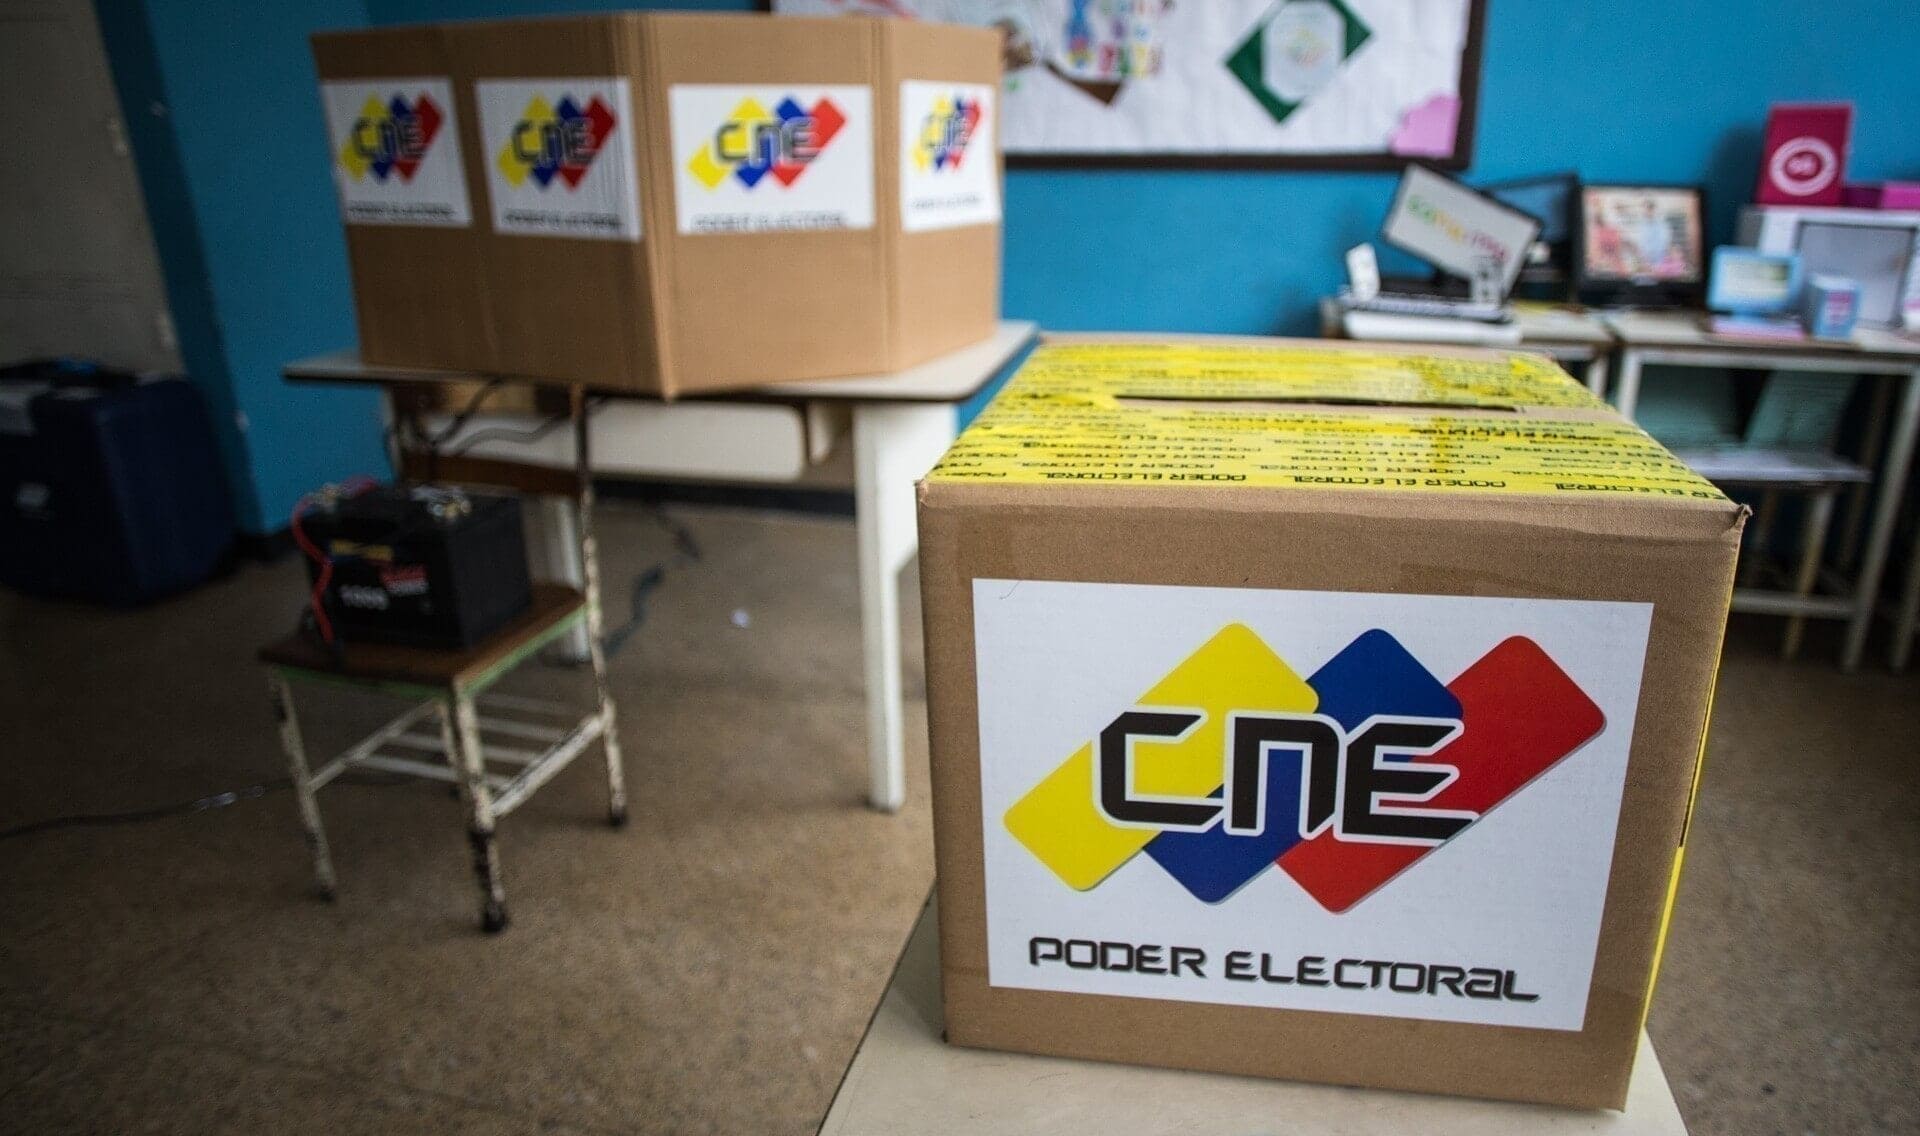 El CNE no decide todavía si cuenta los votos de la primarias